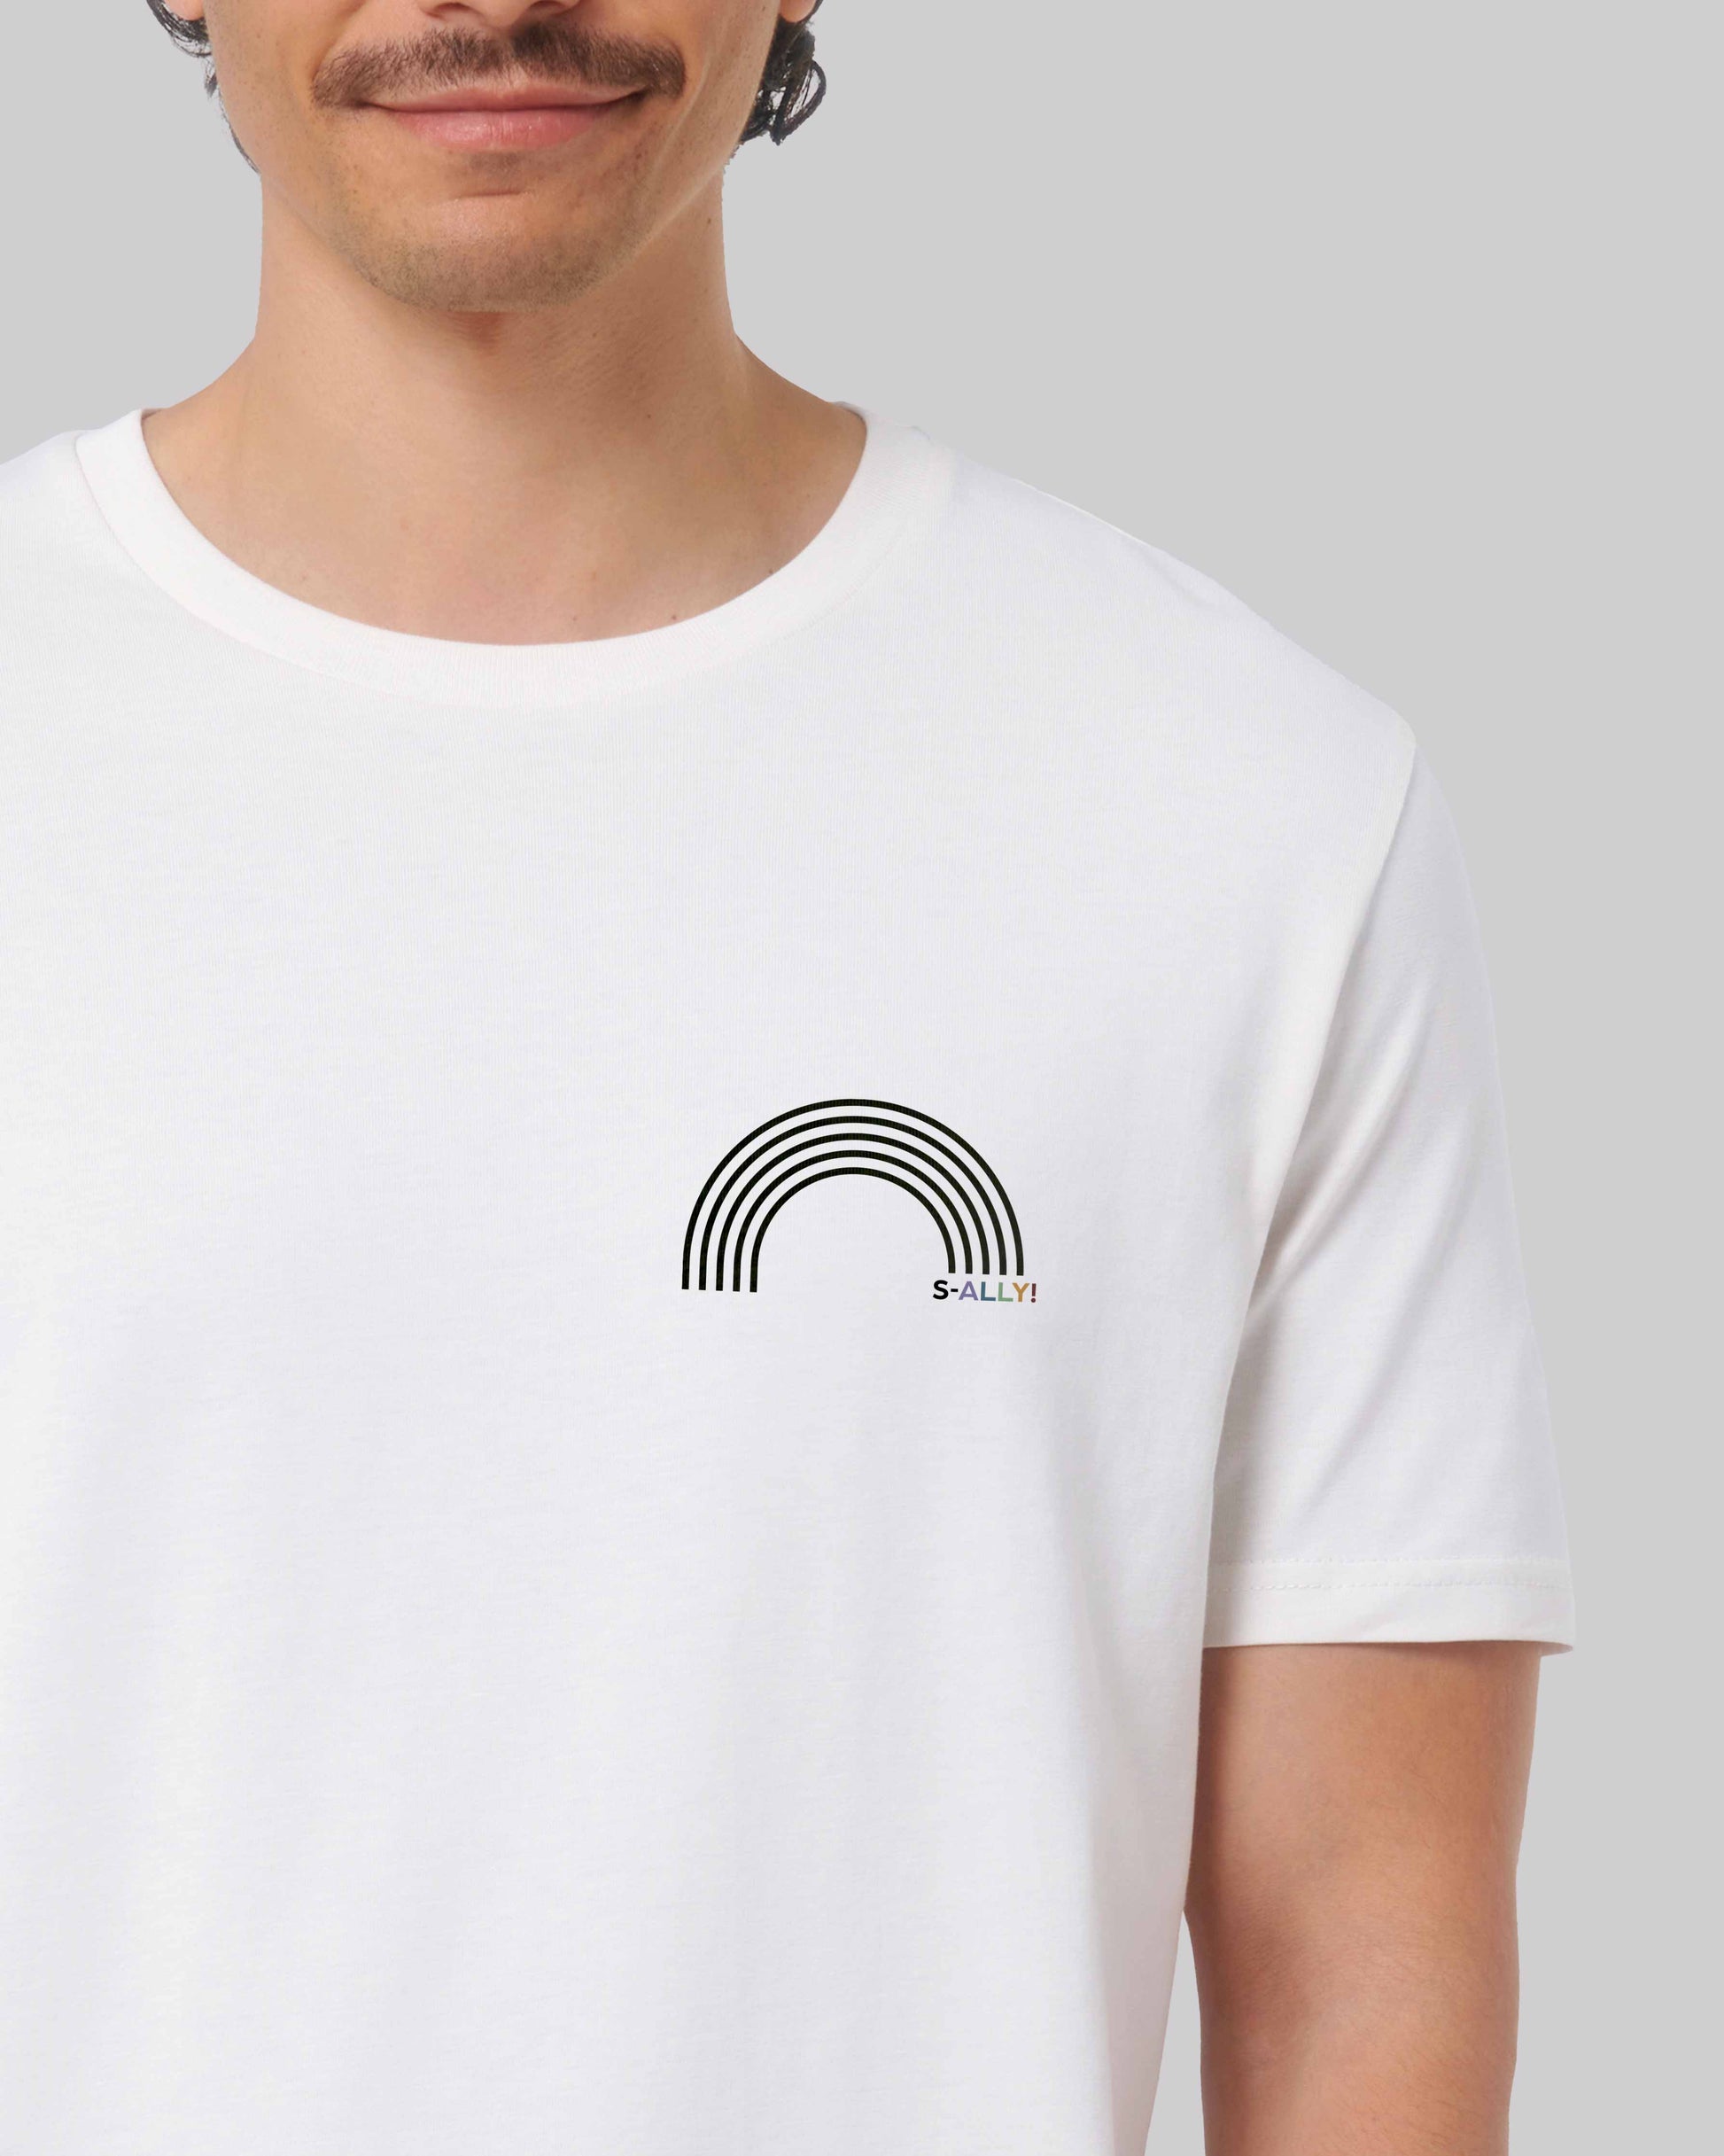 EINHORST® unisex Organic Shirt in Weiß mit dem Motiv "s-ally Regenbogen" in der Kombination schwarzer Regenbogen mit bunter Schrift, Bild von männlicher Person mit Shirt